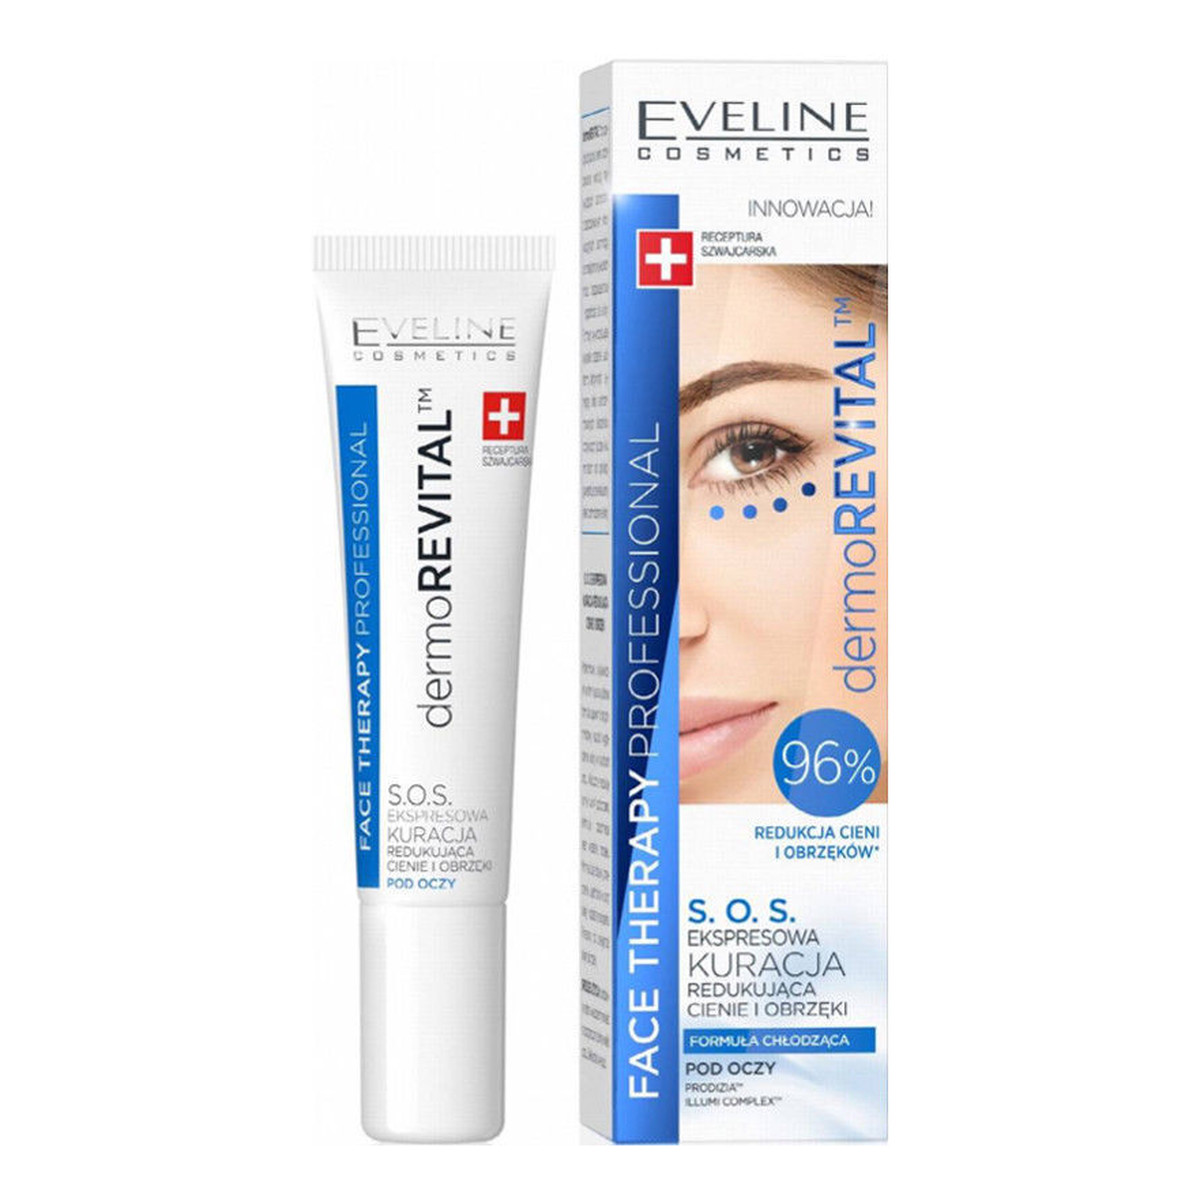 Eveline Face Therapy Professional kuracja S.O.S. redukująca cienie i obrzęki pod oczami Dermorevital 15ml